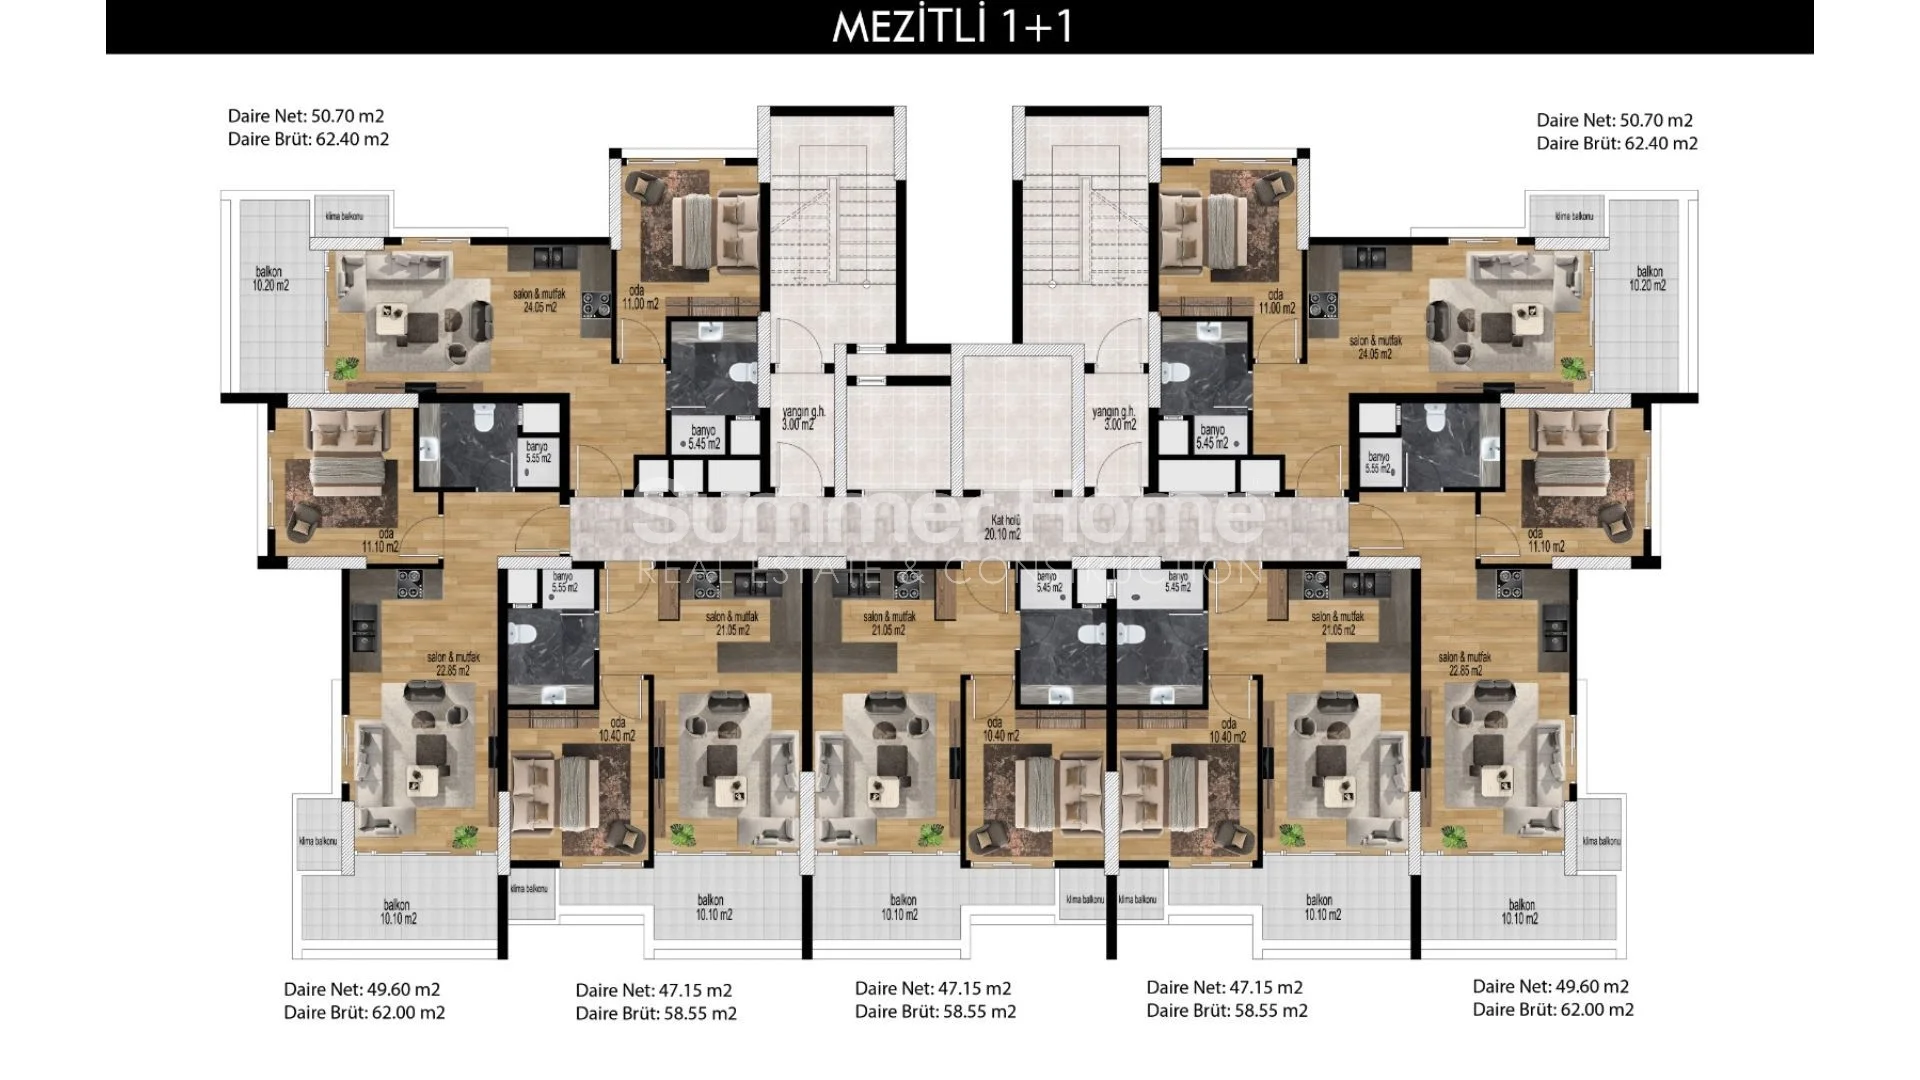 Prekrasni apartmani modernog dizajna u Mezitli, Mersin plan - 28